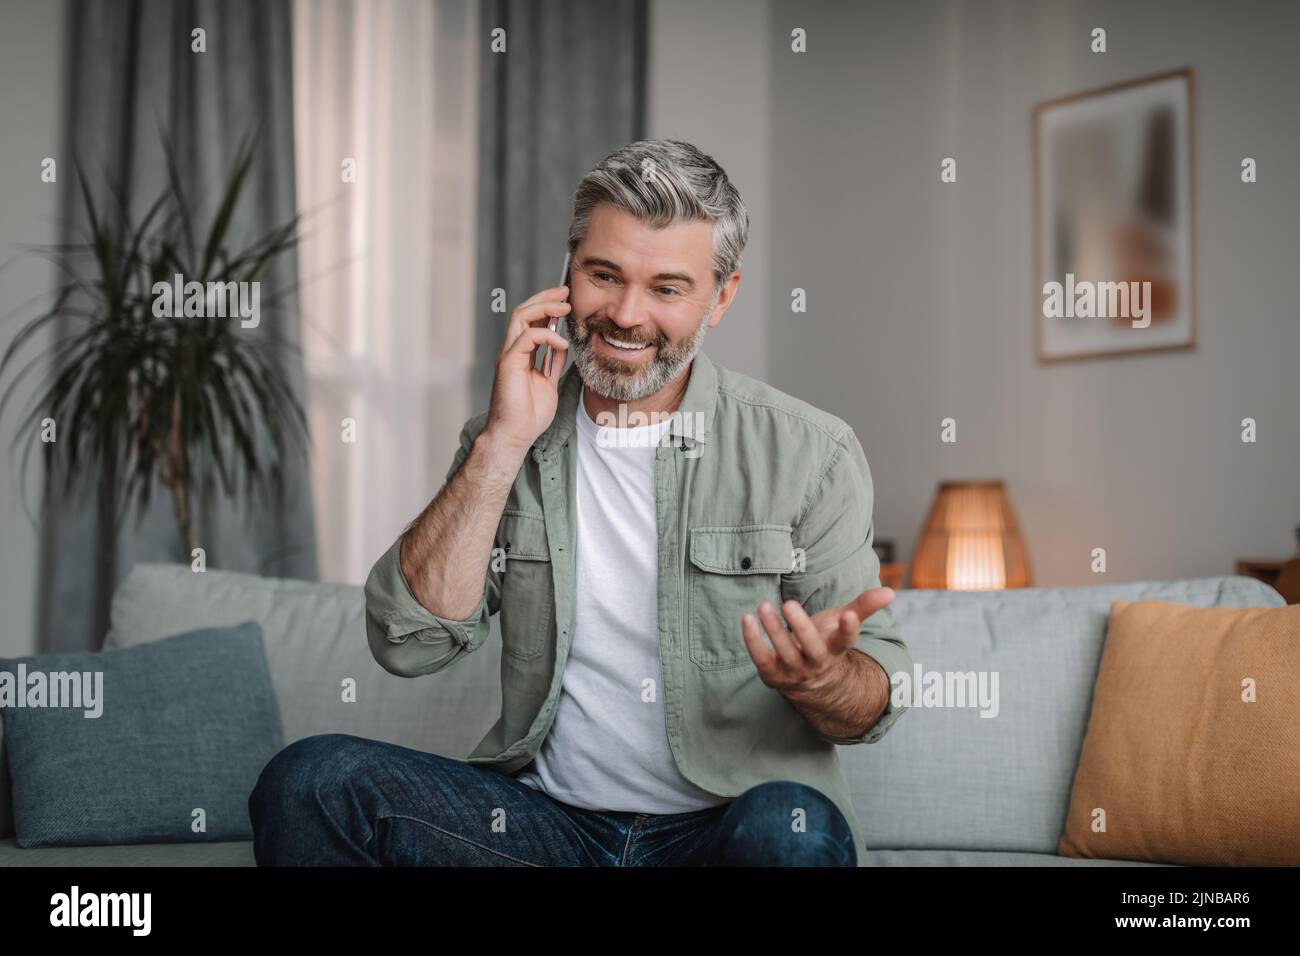 Sonriente hombre europeo jubilado con llamadas para la barba mediante smartphone, mando a distancia en el interior del salón Foto de stock